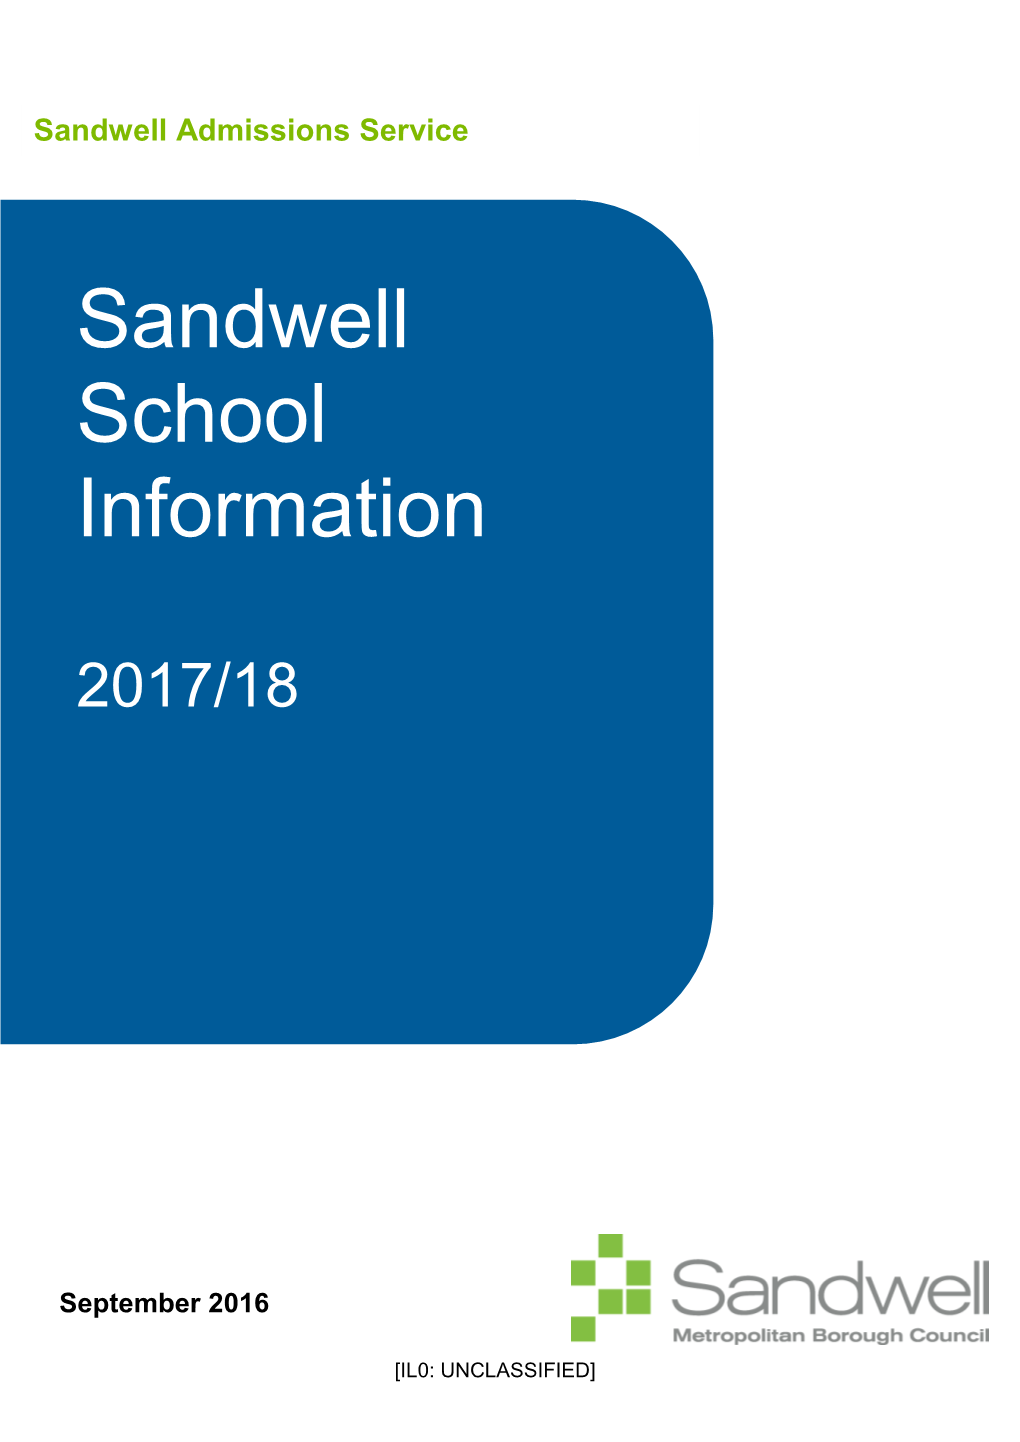 Sandwell School Information